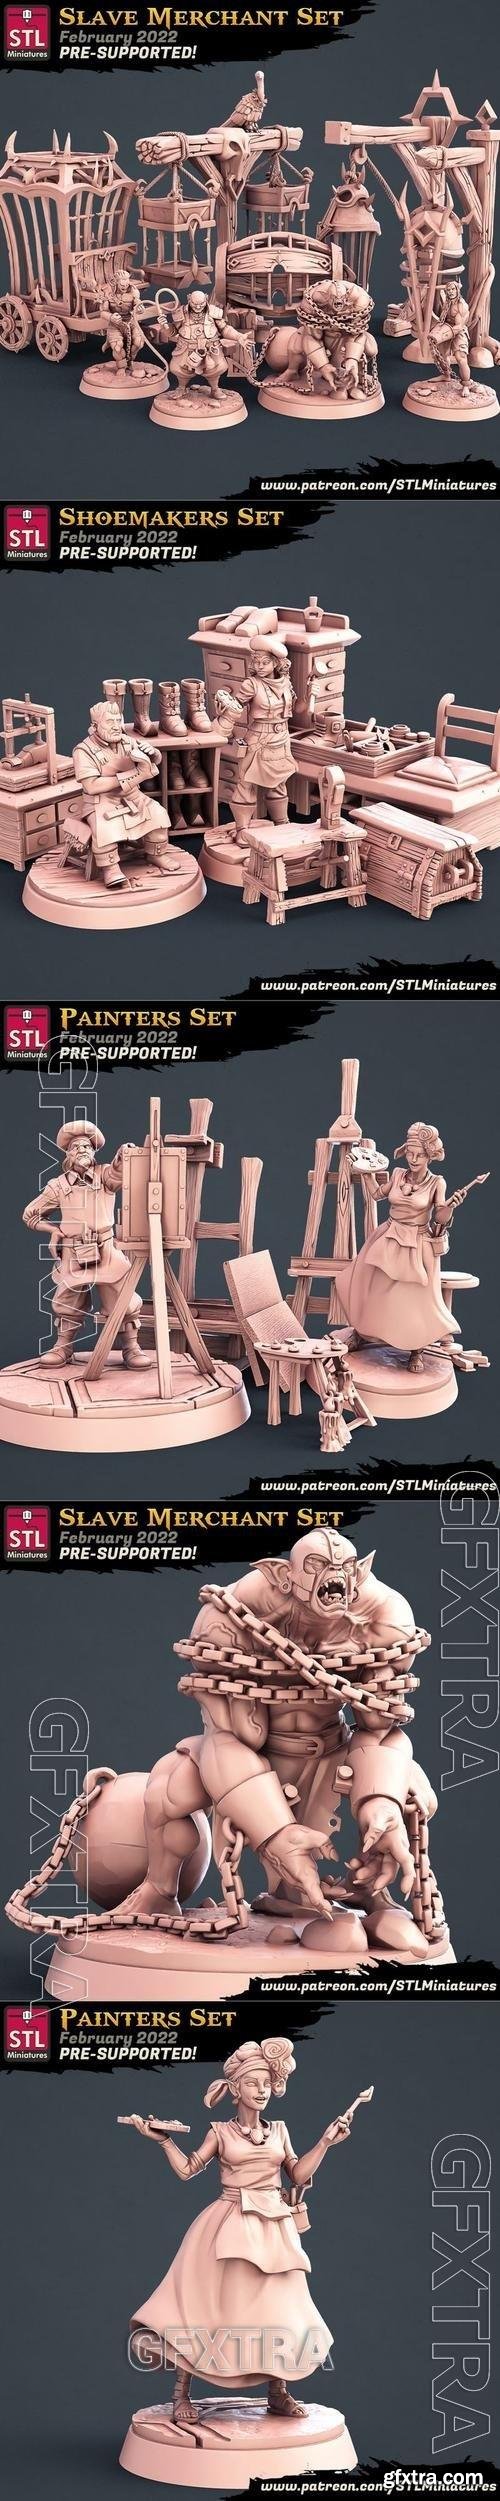 STL Miniatures - Shoemakrs, Painters, Slave Merchant 3D